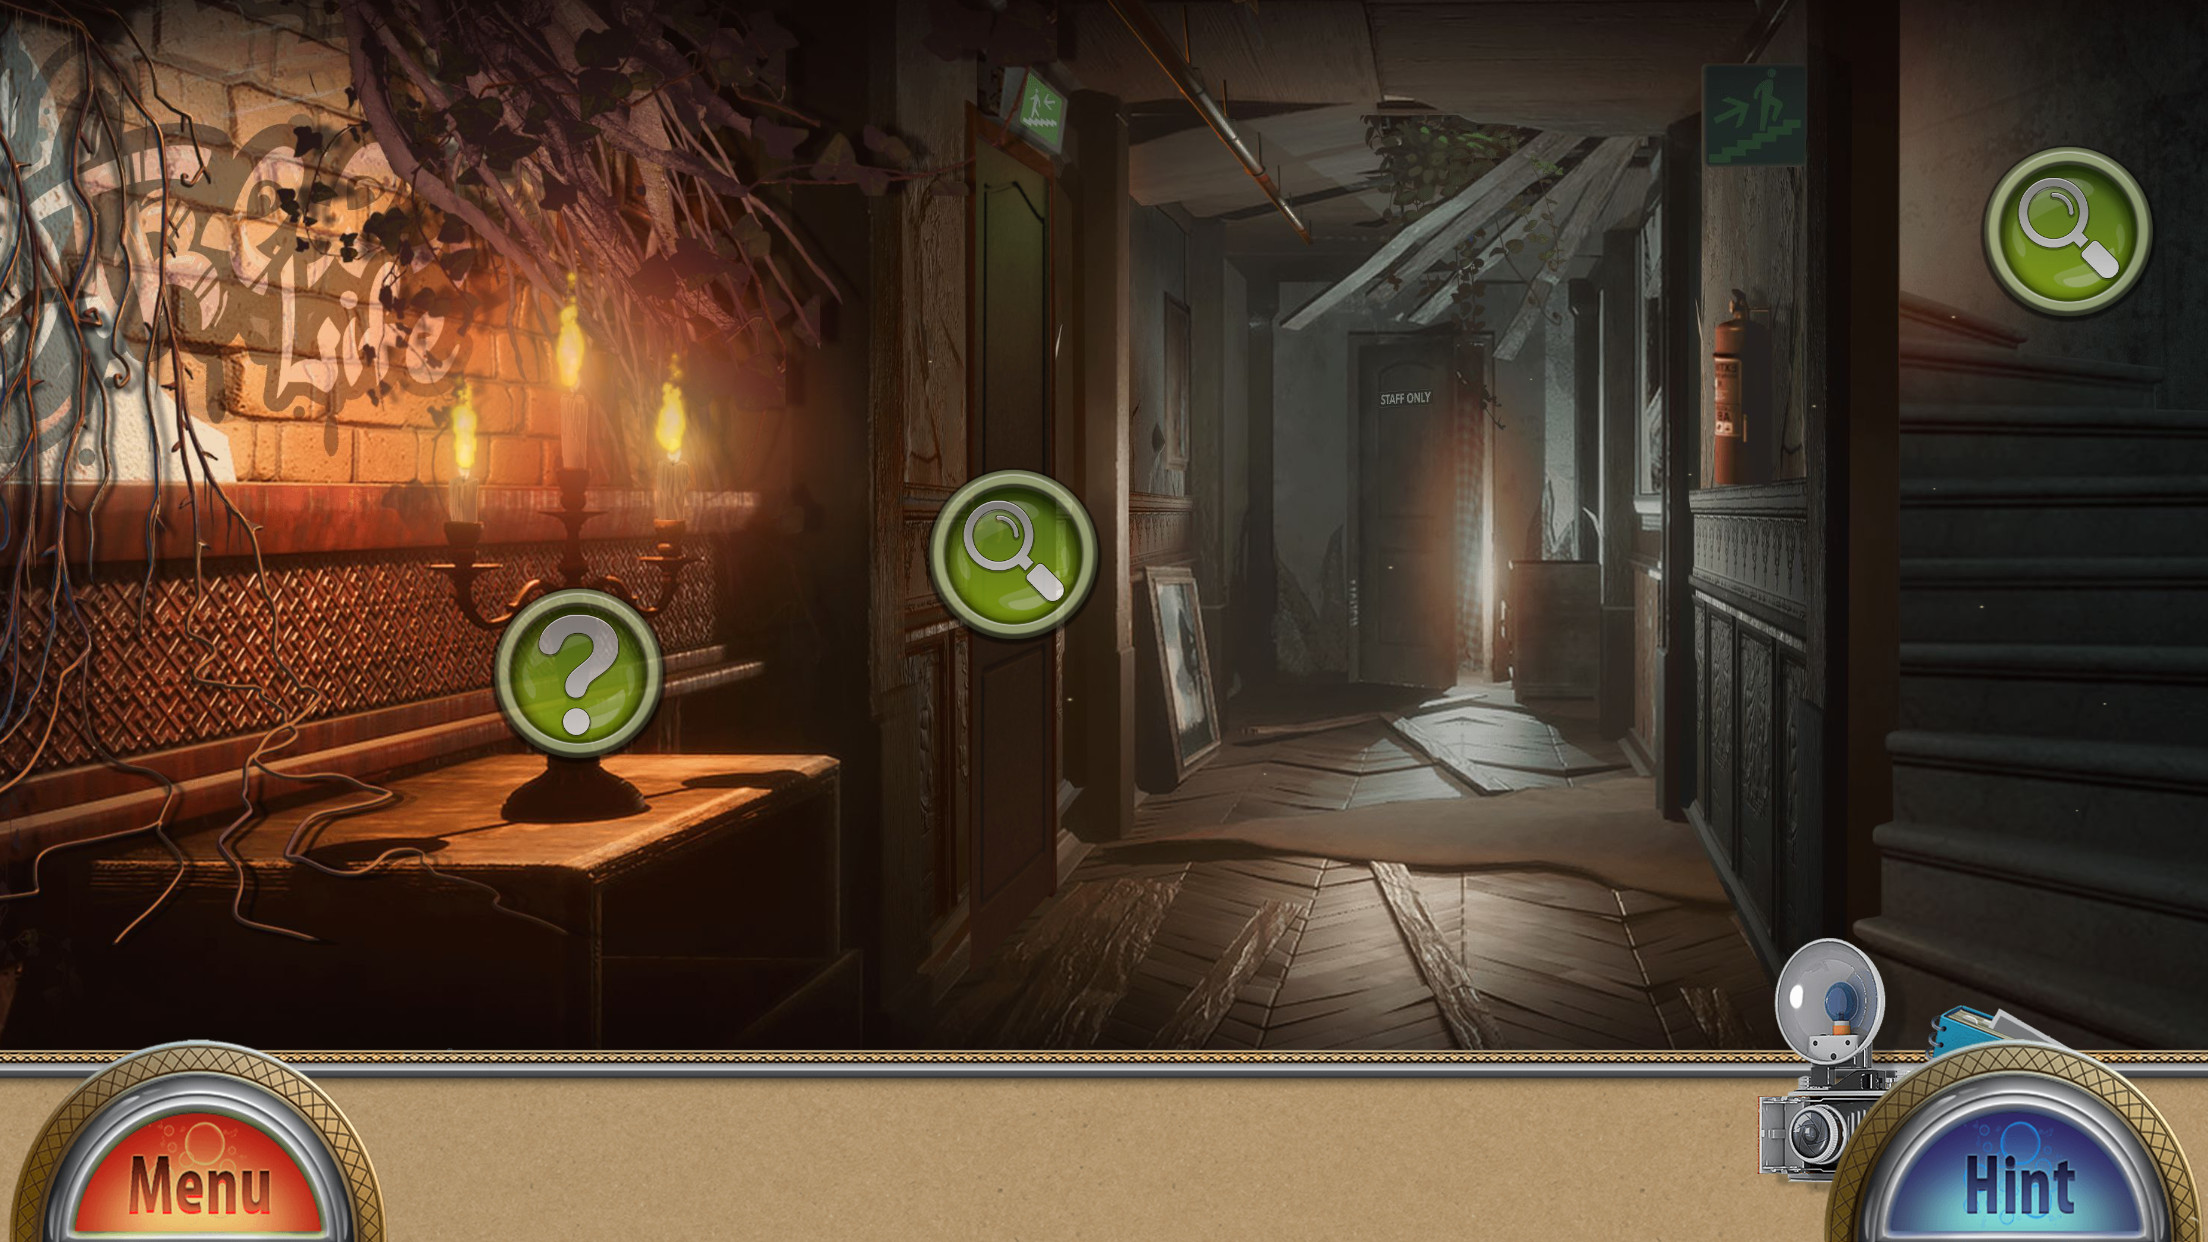 Wax Museum - Seek and Find - Mystery Hidden Object Adventure screenshot